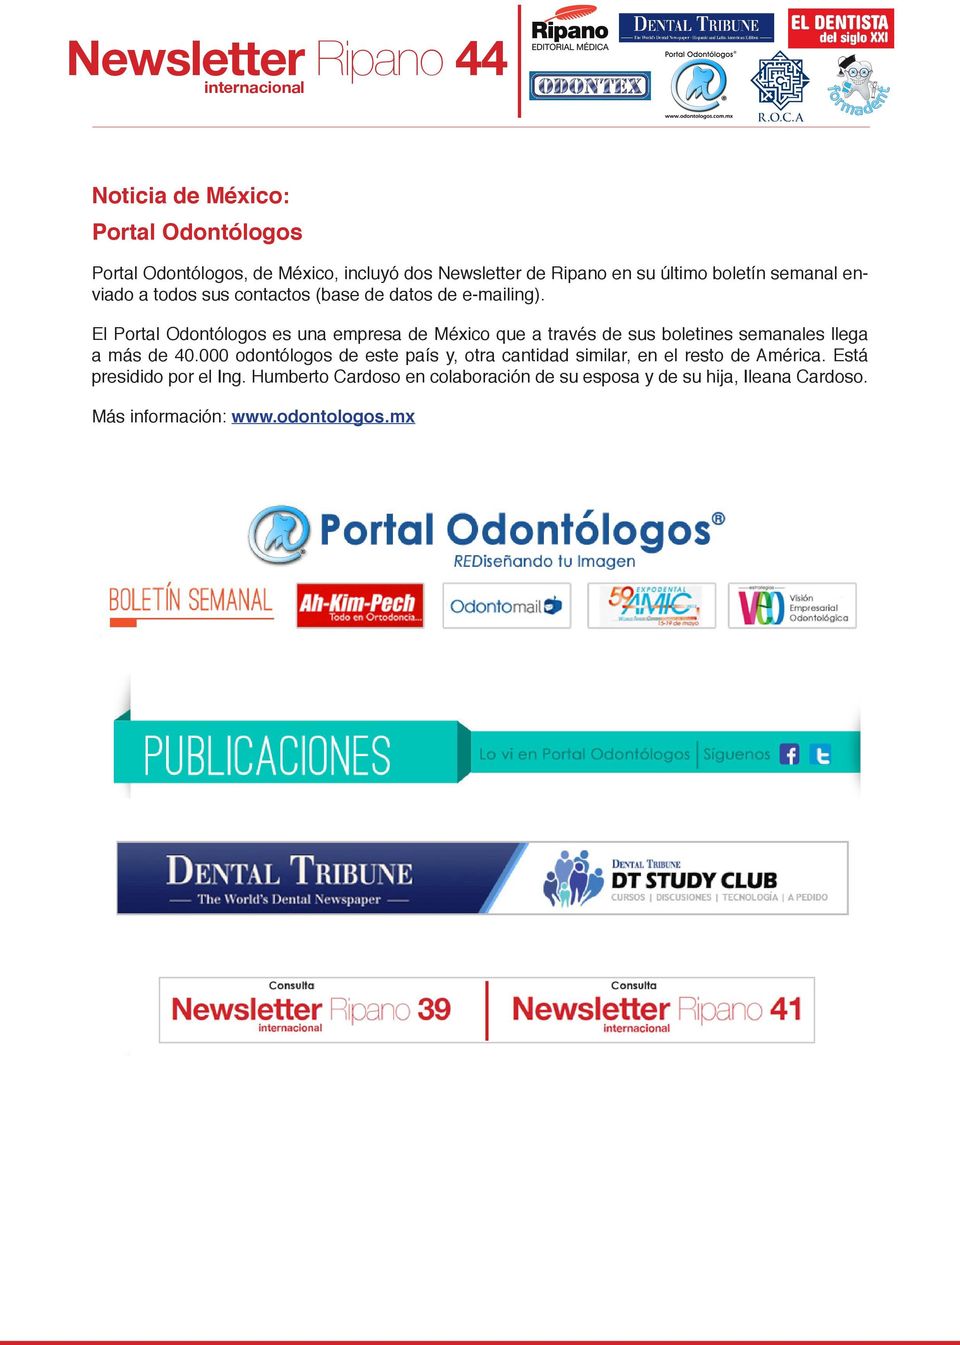 El Portal Odontólogos es una empresa de México que a través de sus boletines semanales llega a más de 40.